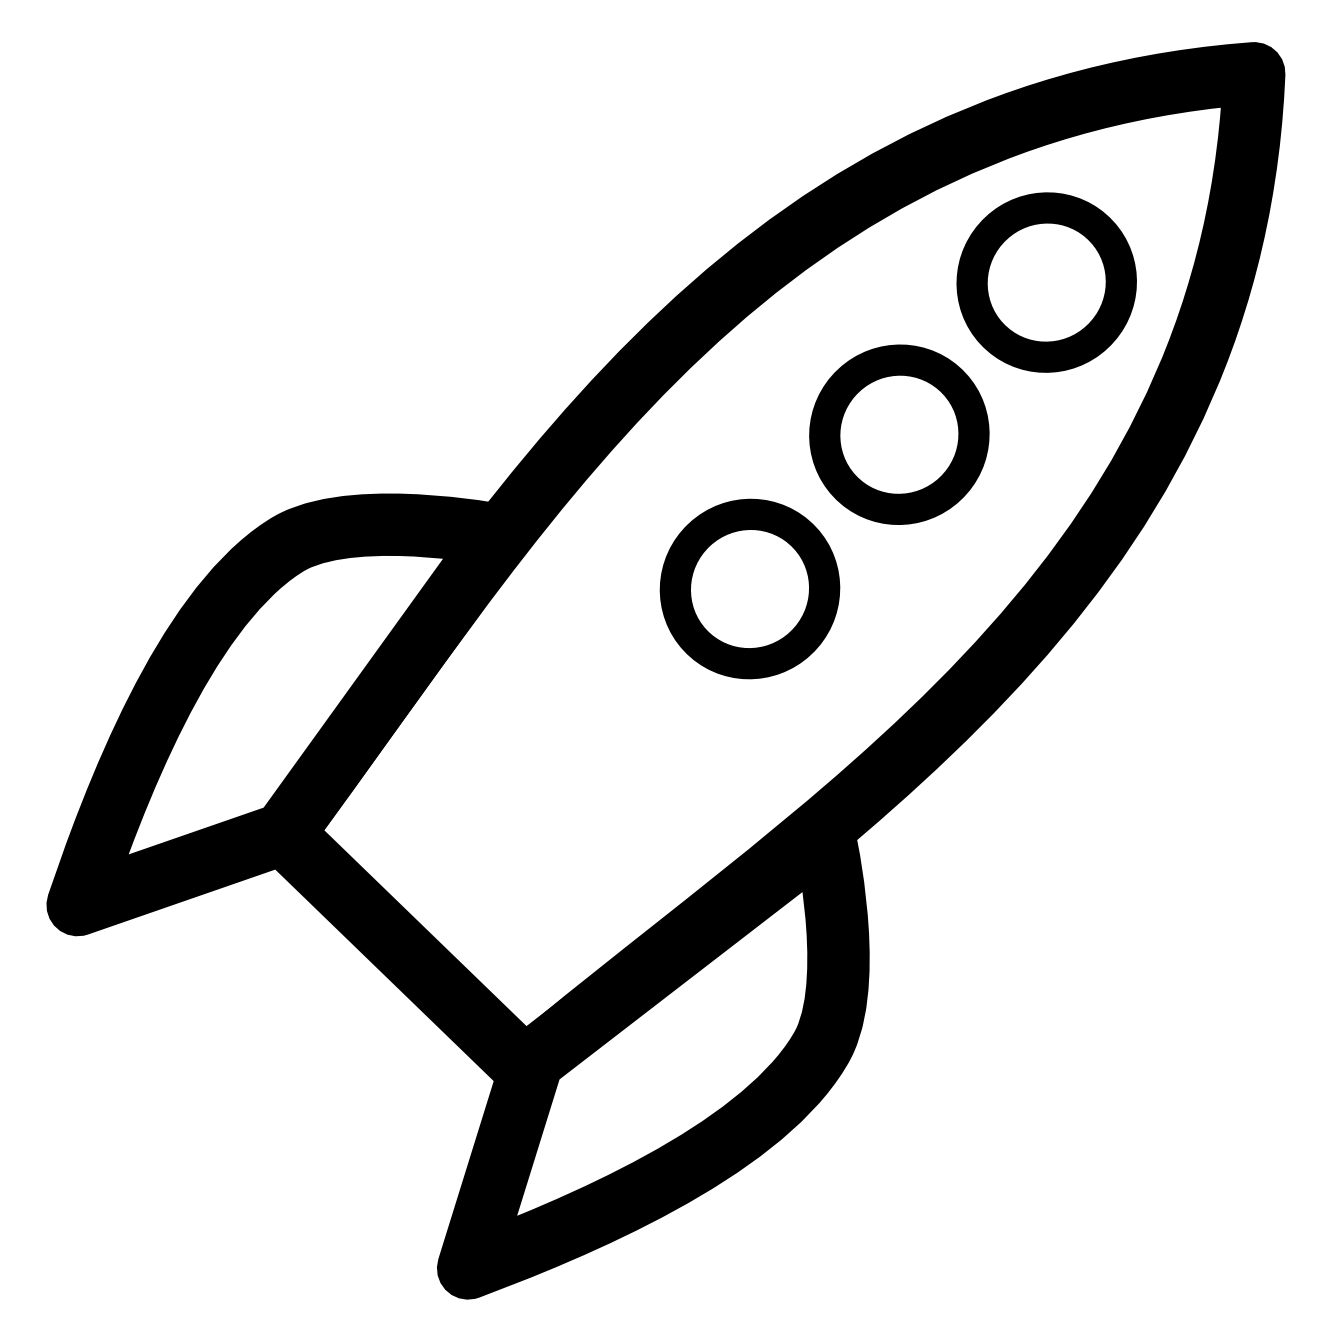 Rocketship clipart realistic, Rocketship realistic